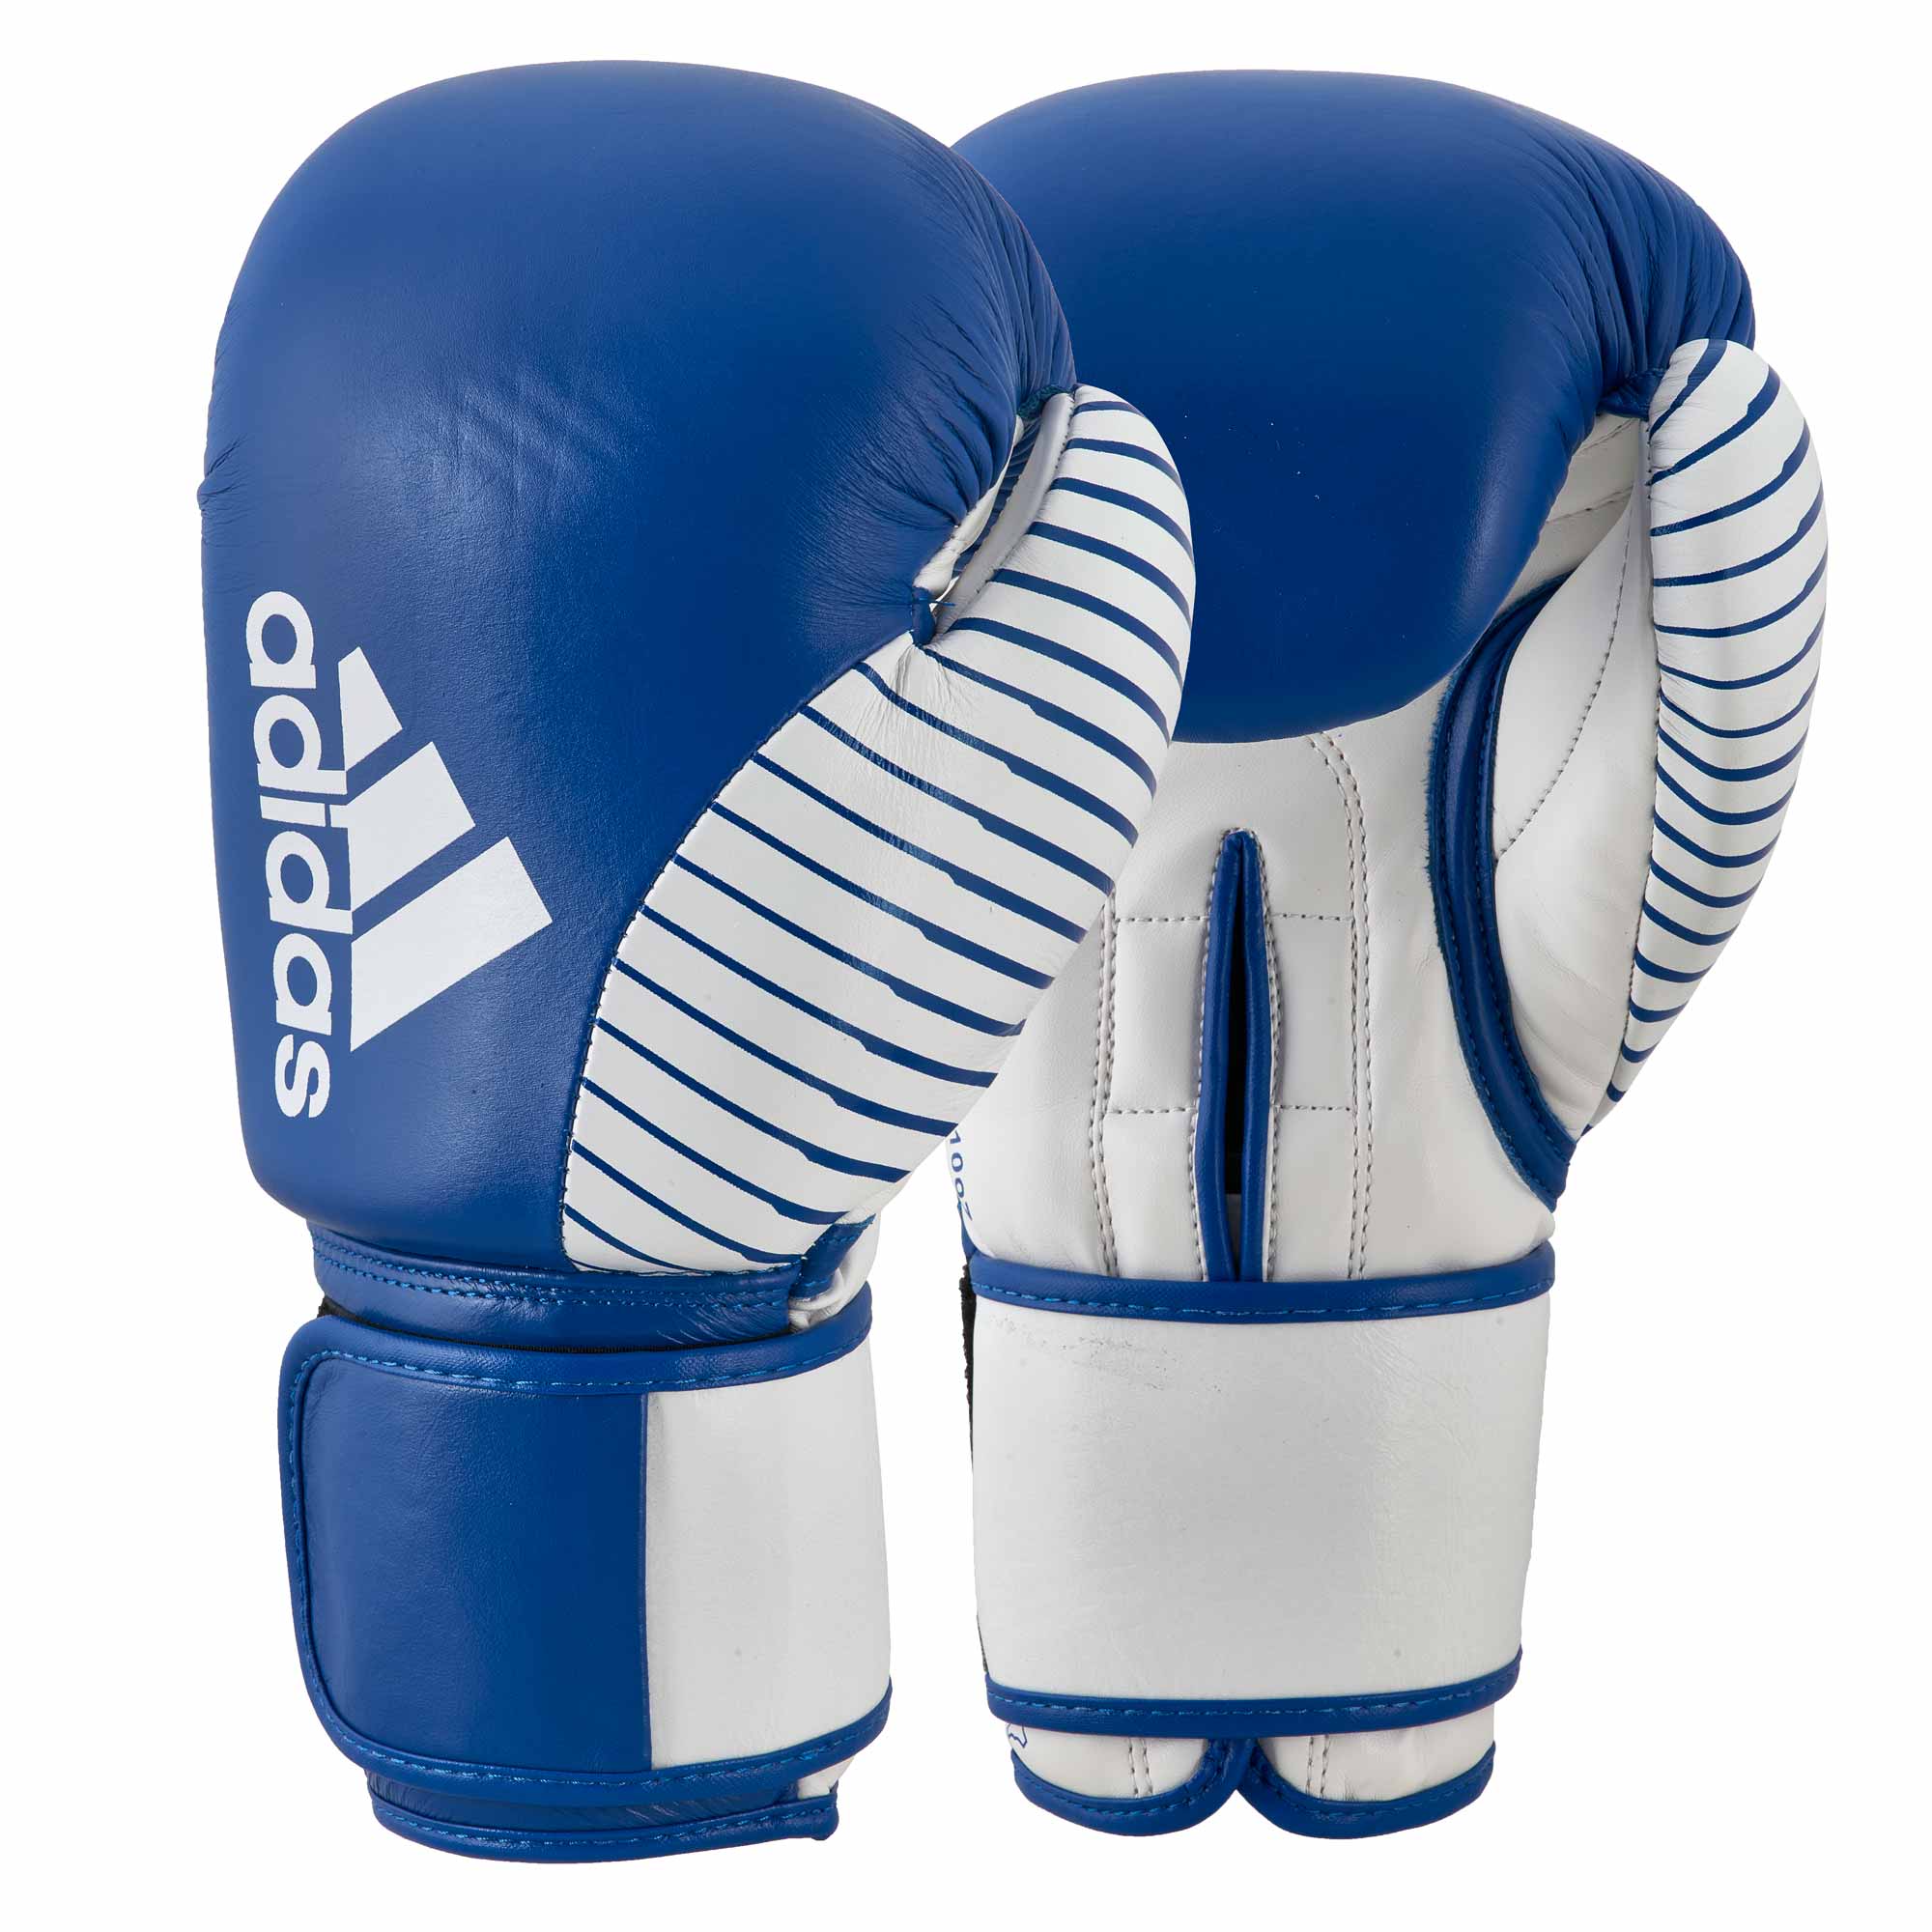 Adidas Kickboxing Wettkampfhandschuh blue/white